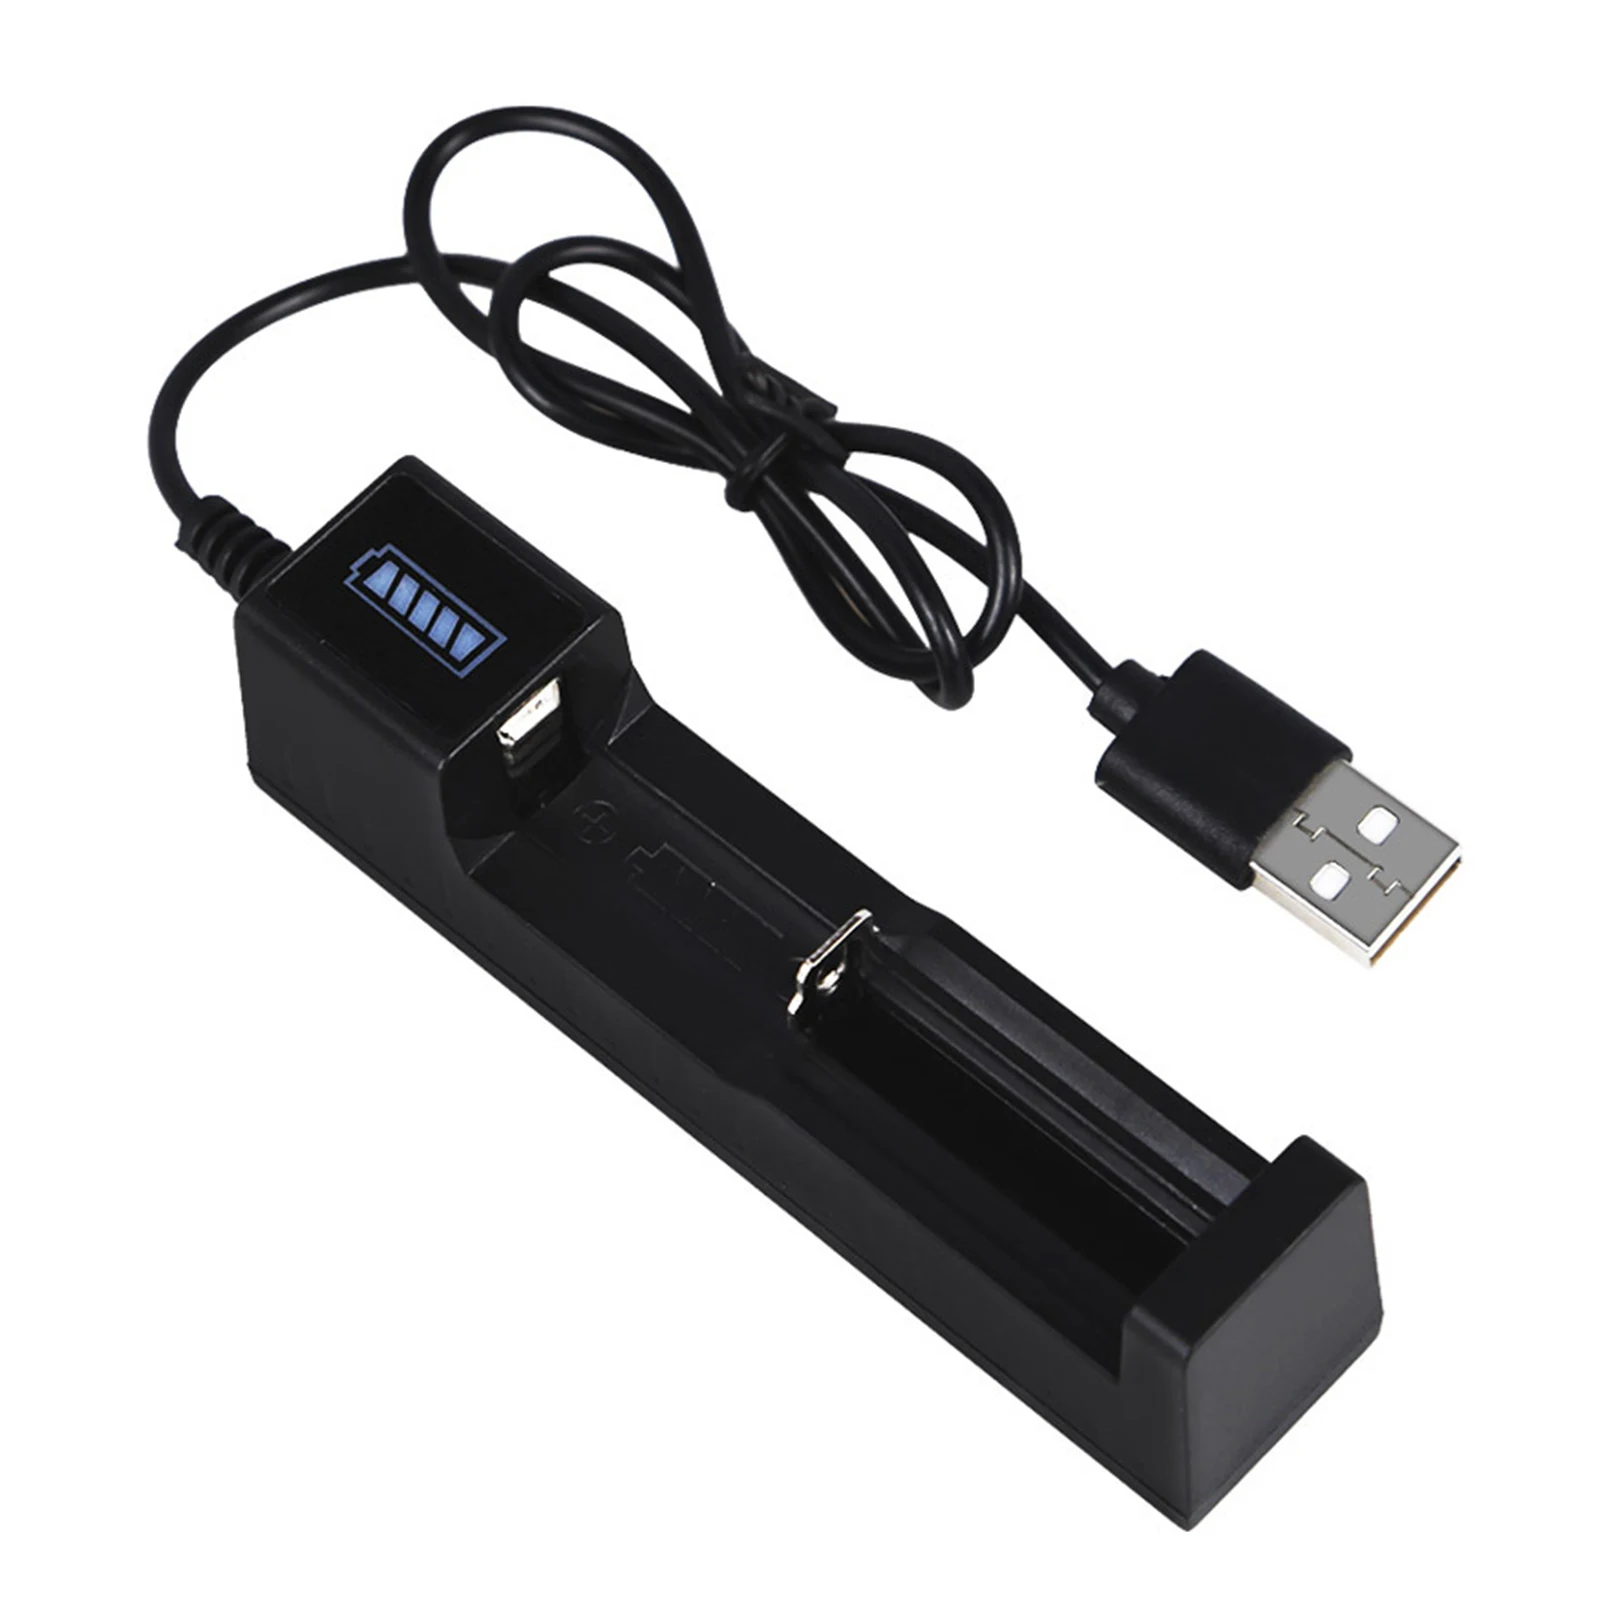 

Новое универсальное зарядное устройство USB с 1 слотом для аккумуляторов умное зарядное устройство со светодиодной подсветкой для аккумулят...